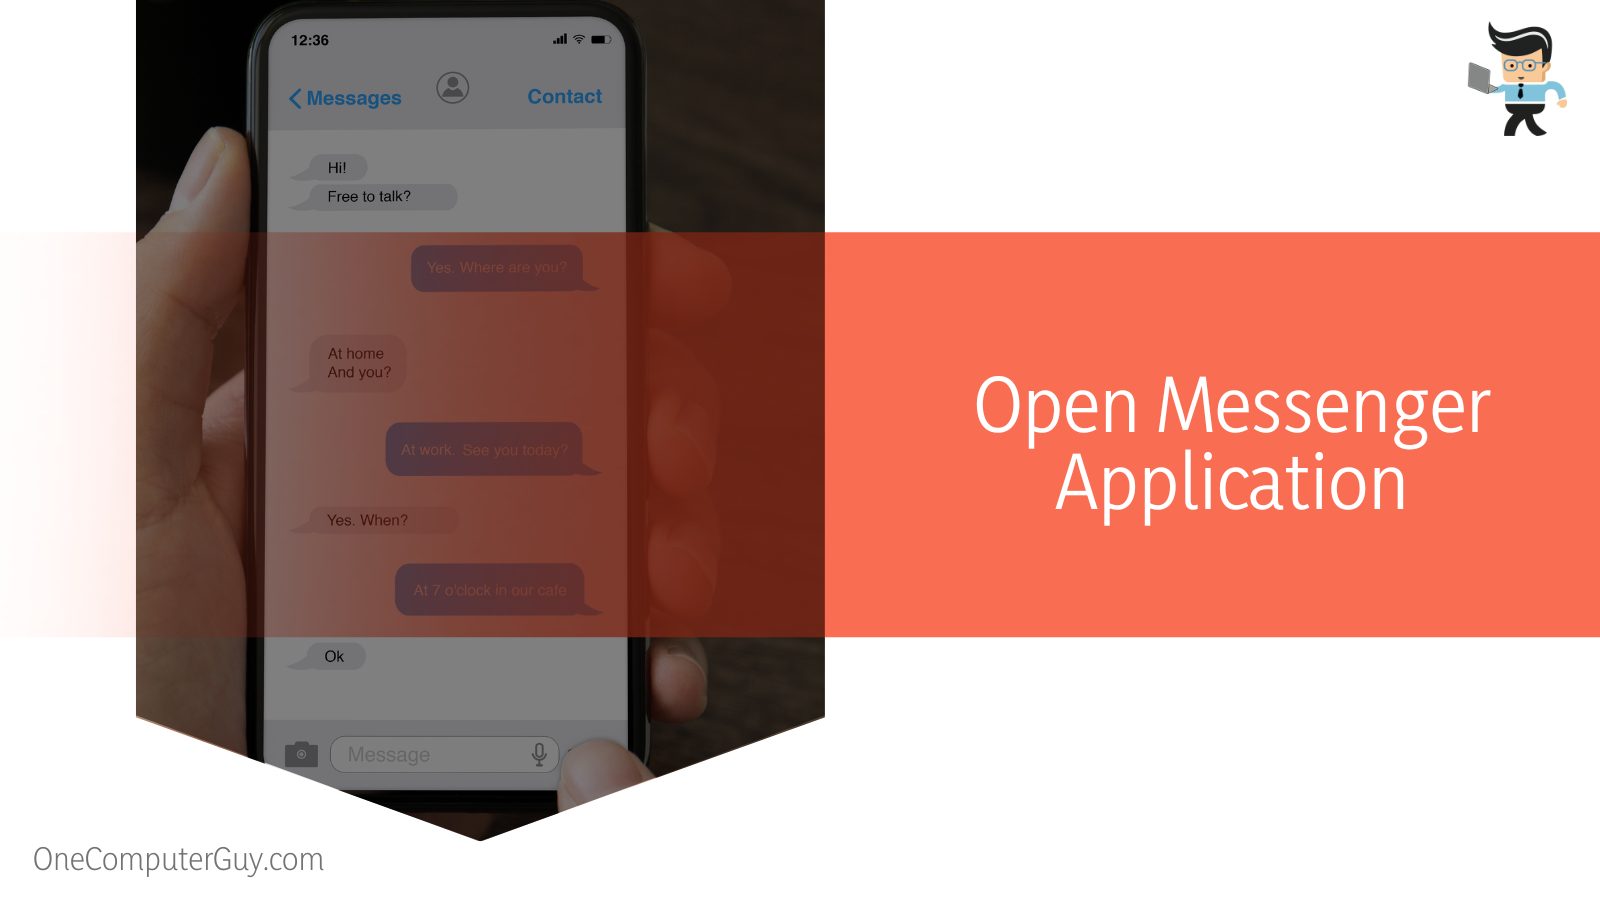 Open Messenger Application